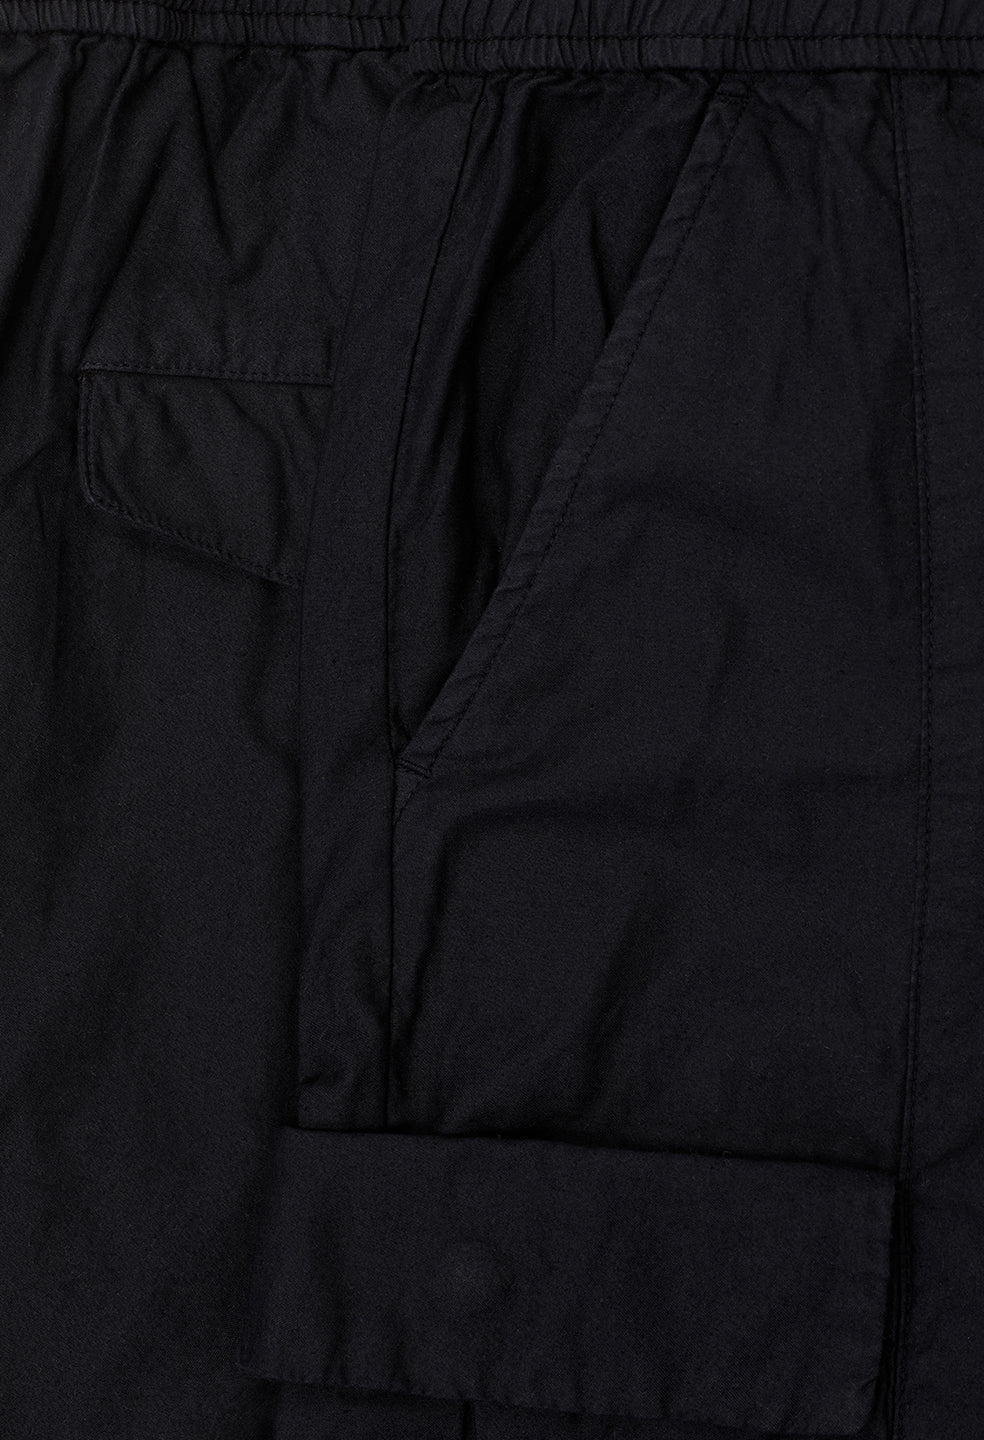 Classic Black Cargo Pants for Men - Size 2XL